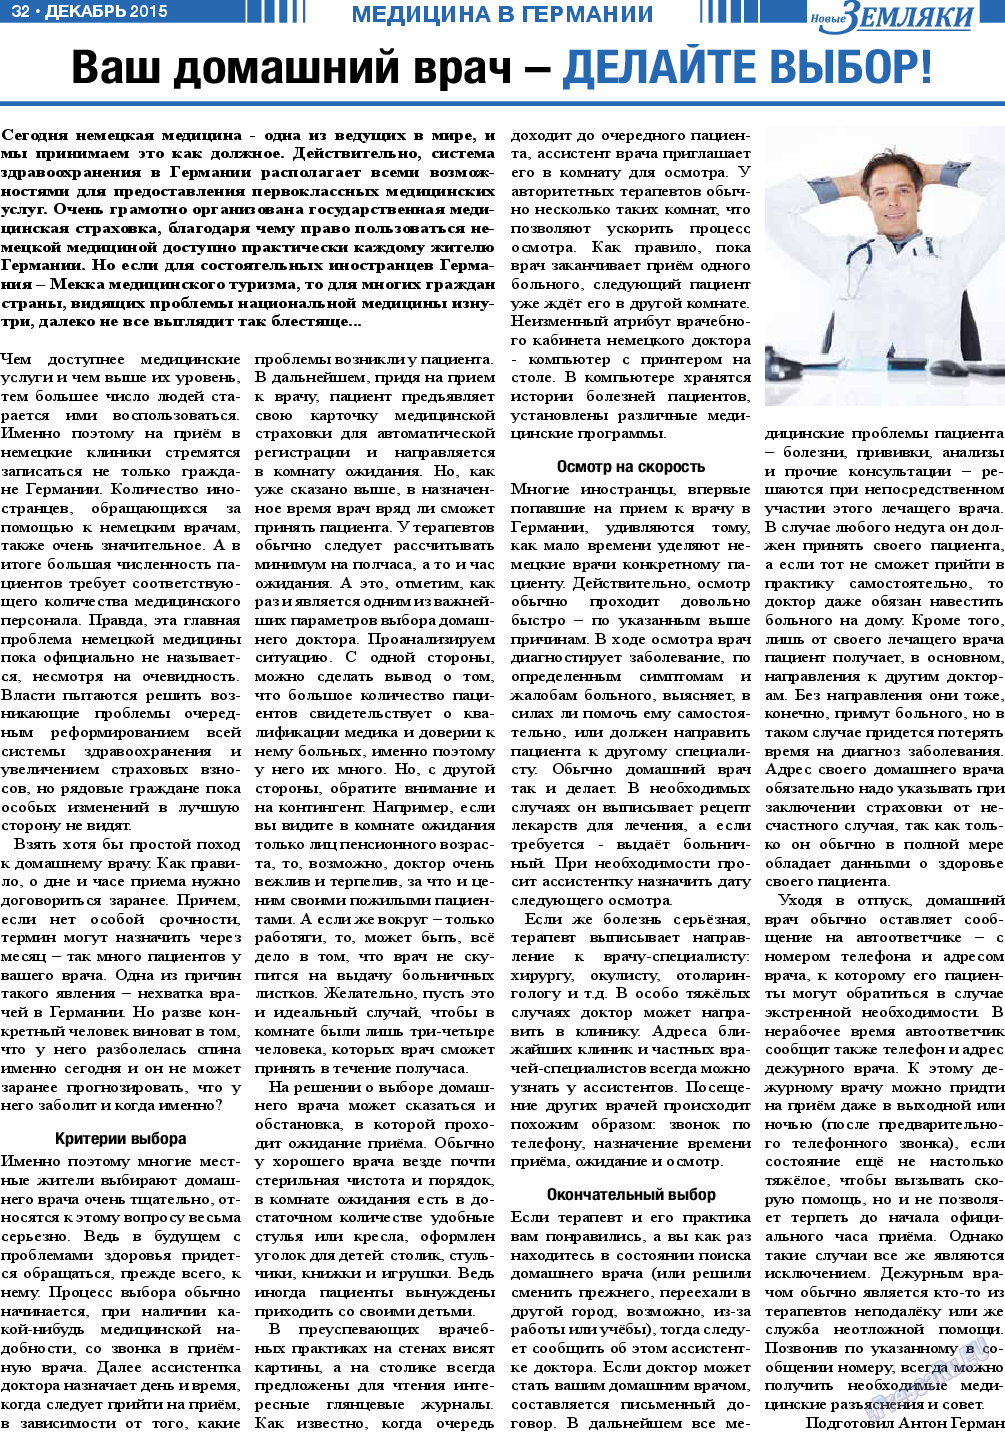 Новые Земляки, газета. 2015 №12 стр.32